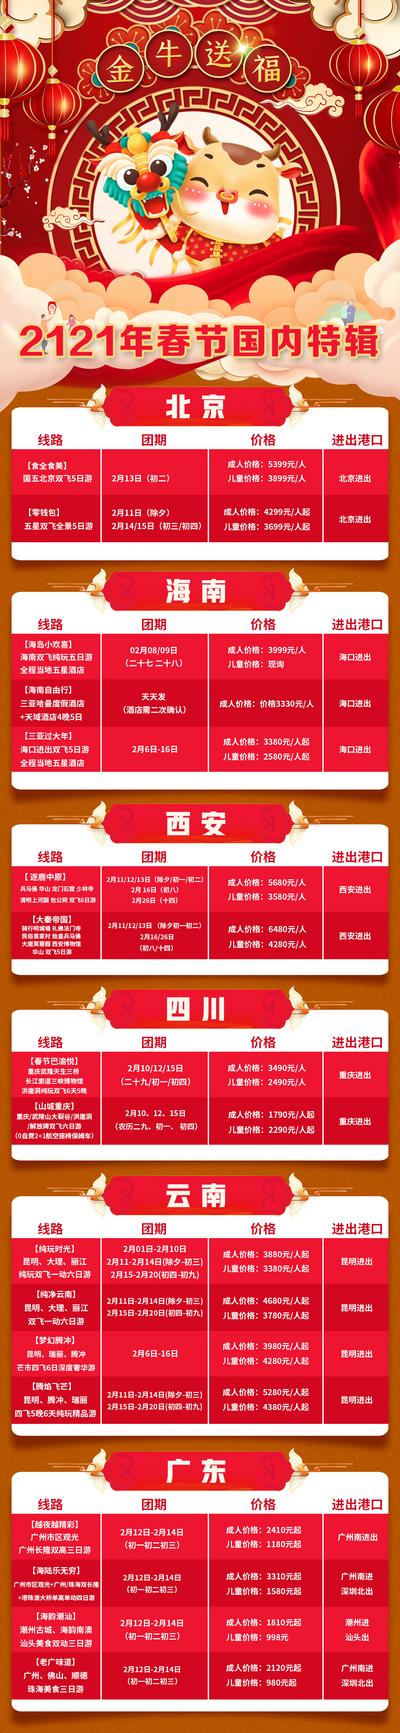 南门网 海报 旅游 特辑 长图 牛年 春节 新年 国内 包团